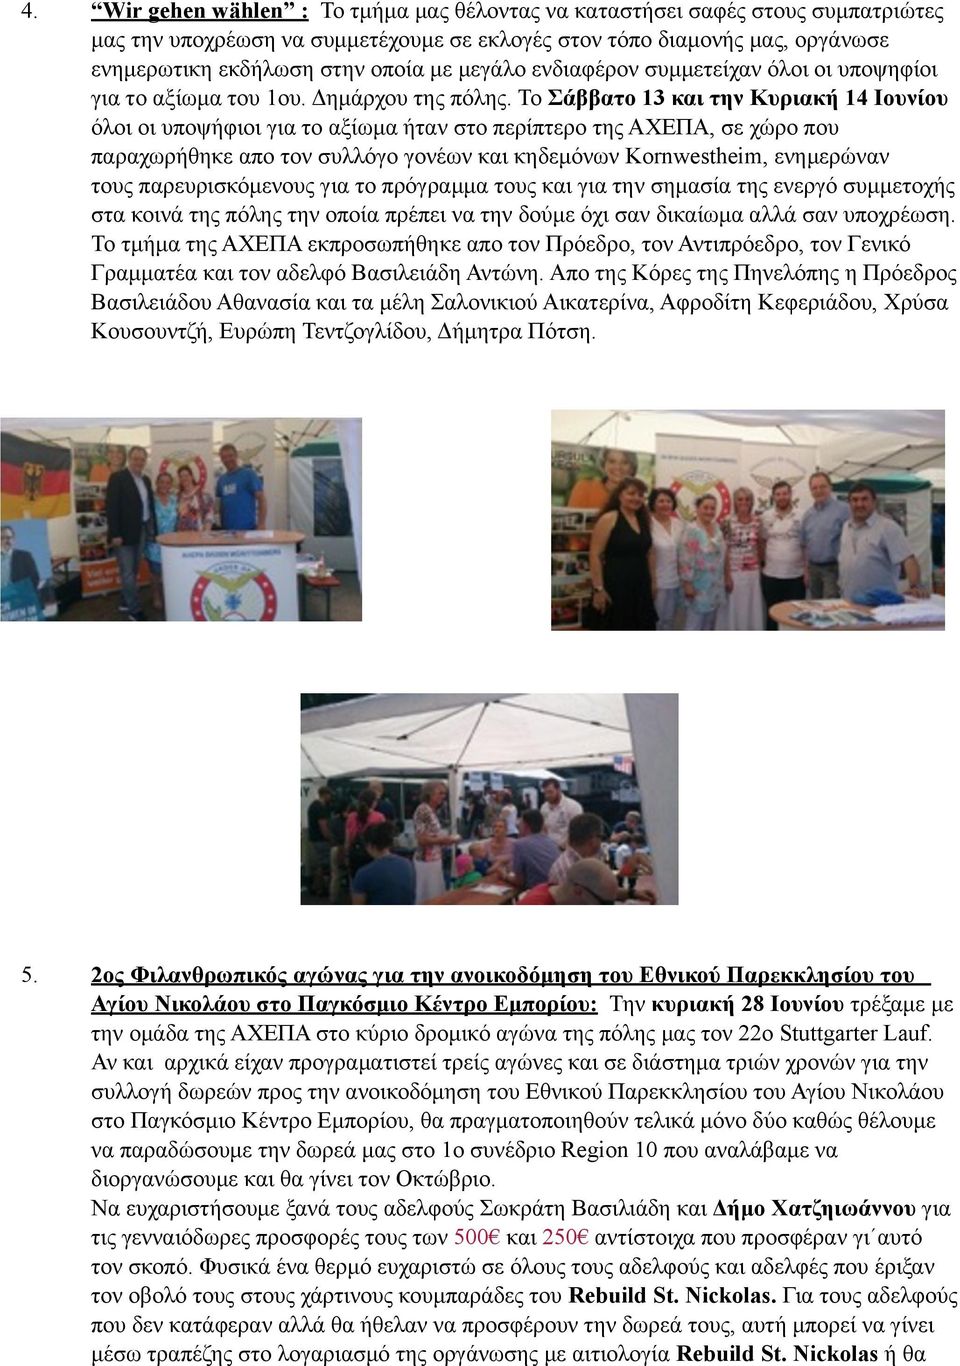 Το Σάββατο 13 και την Κυριακή 14 Ιουνίου όλοι οι υποψήφιοι για το αξίωµα ήταν στο περίπτερο της ΑΧΕΠΑ, σε χώρο που παραχωρήθηκε απο τον συλλόγο γονέων και κηδεµόνων Kornwestheim, ενηµερώναν τους